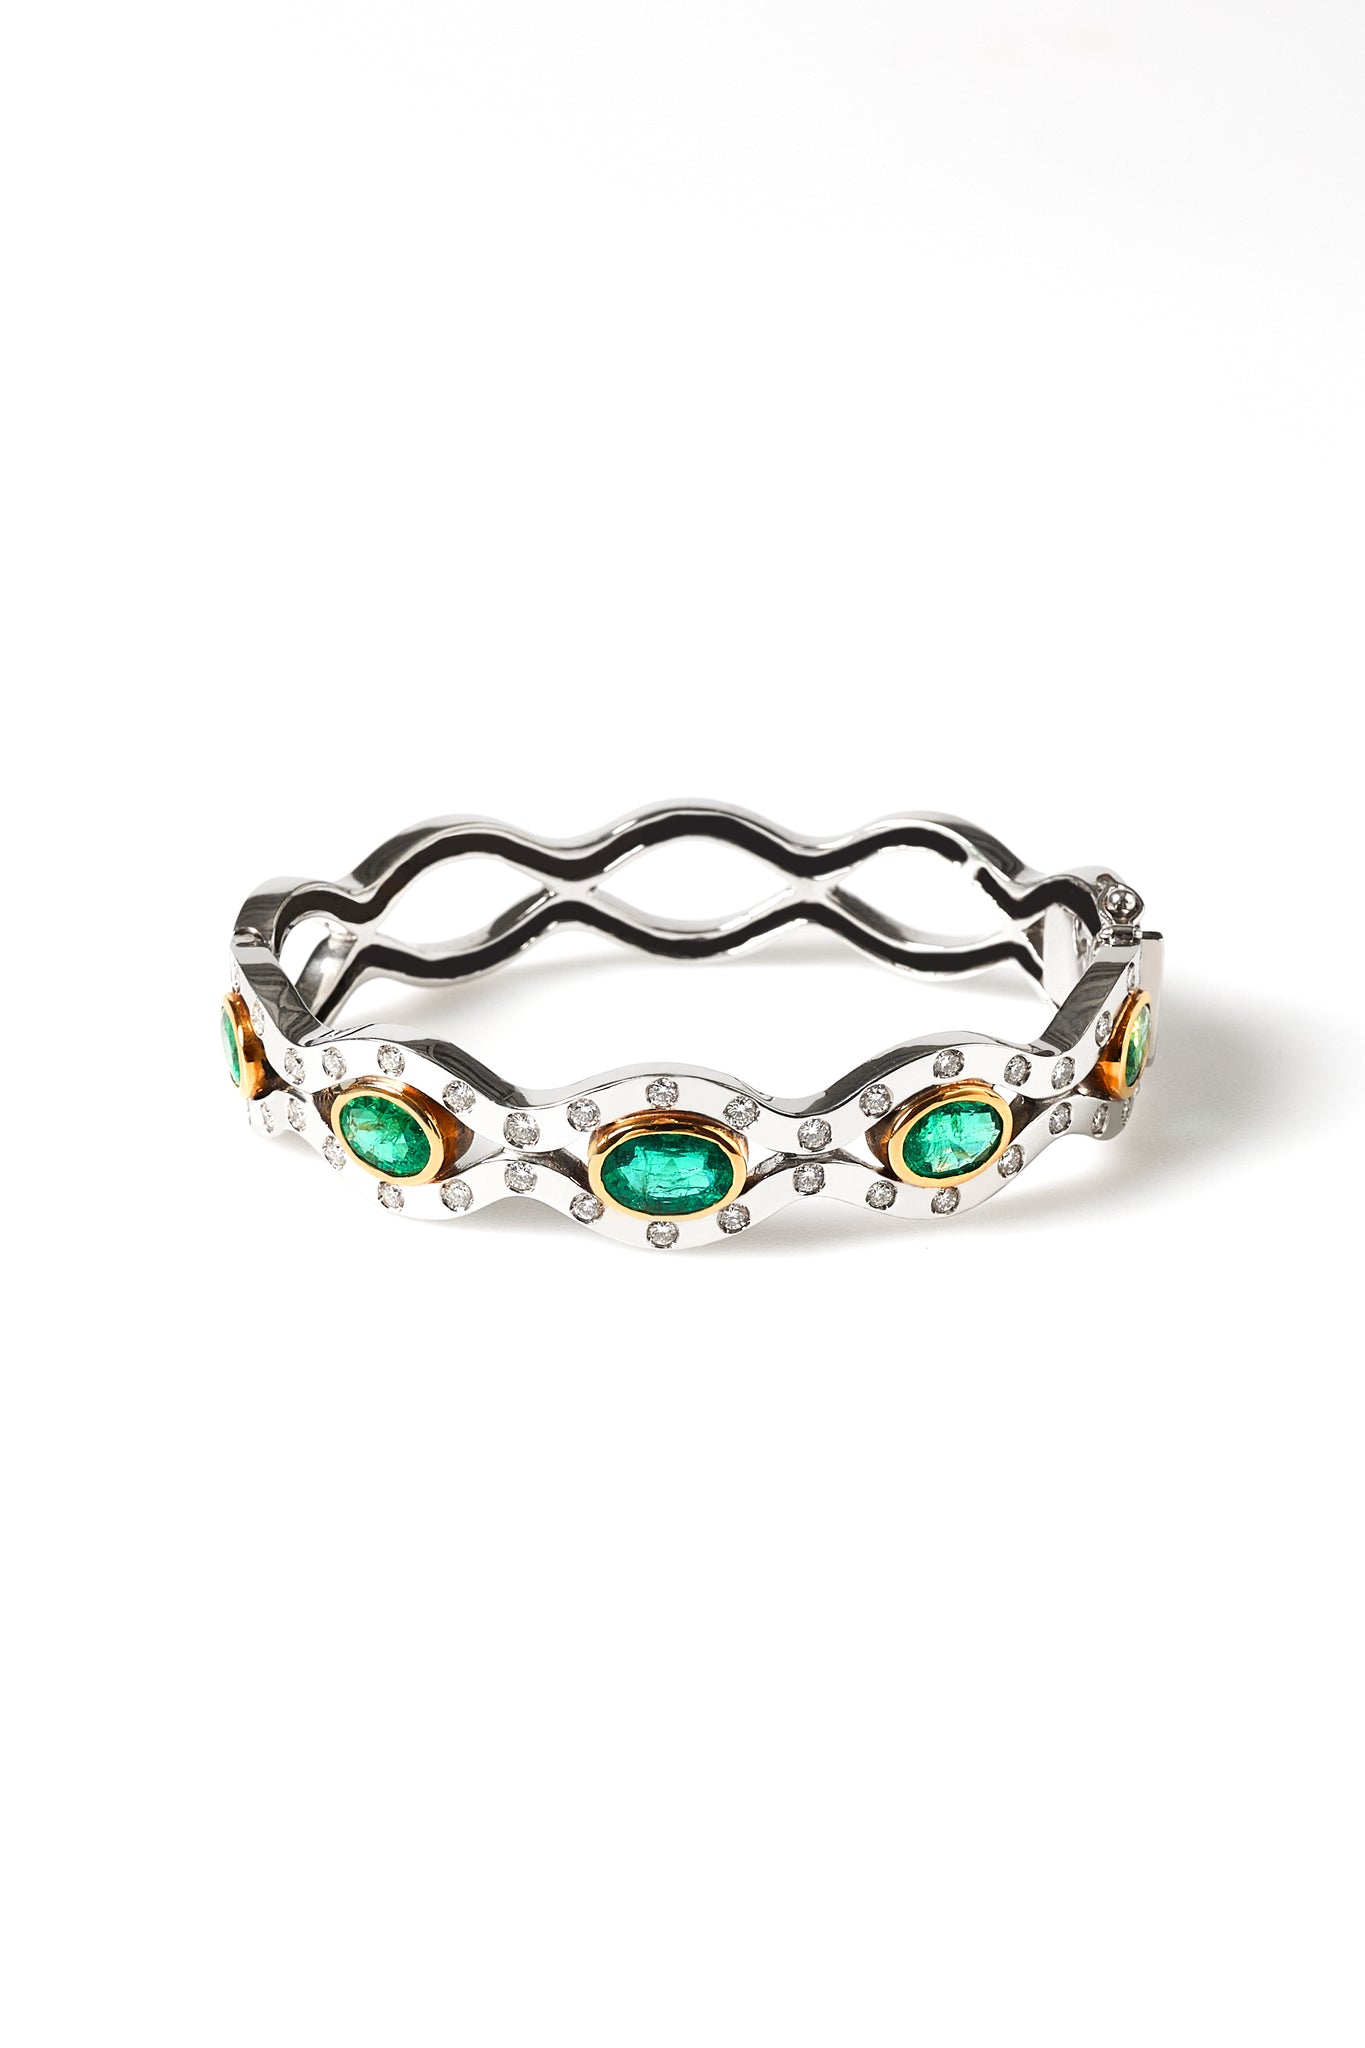 Renaissance Emerald bracelet